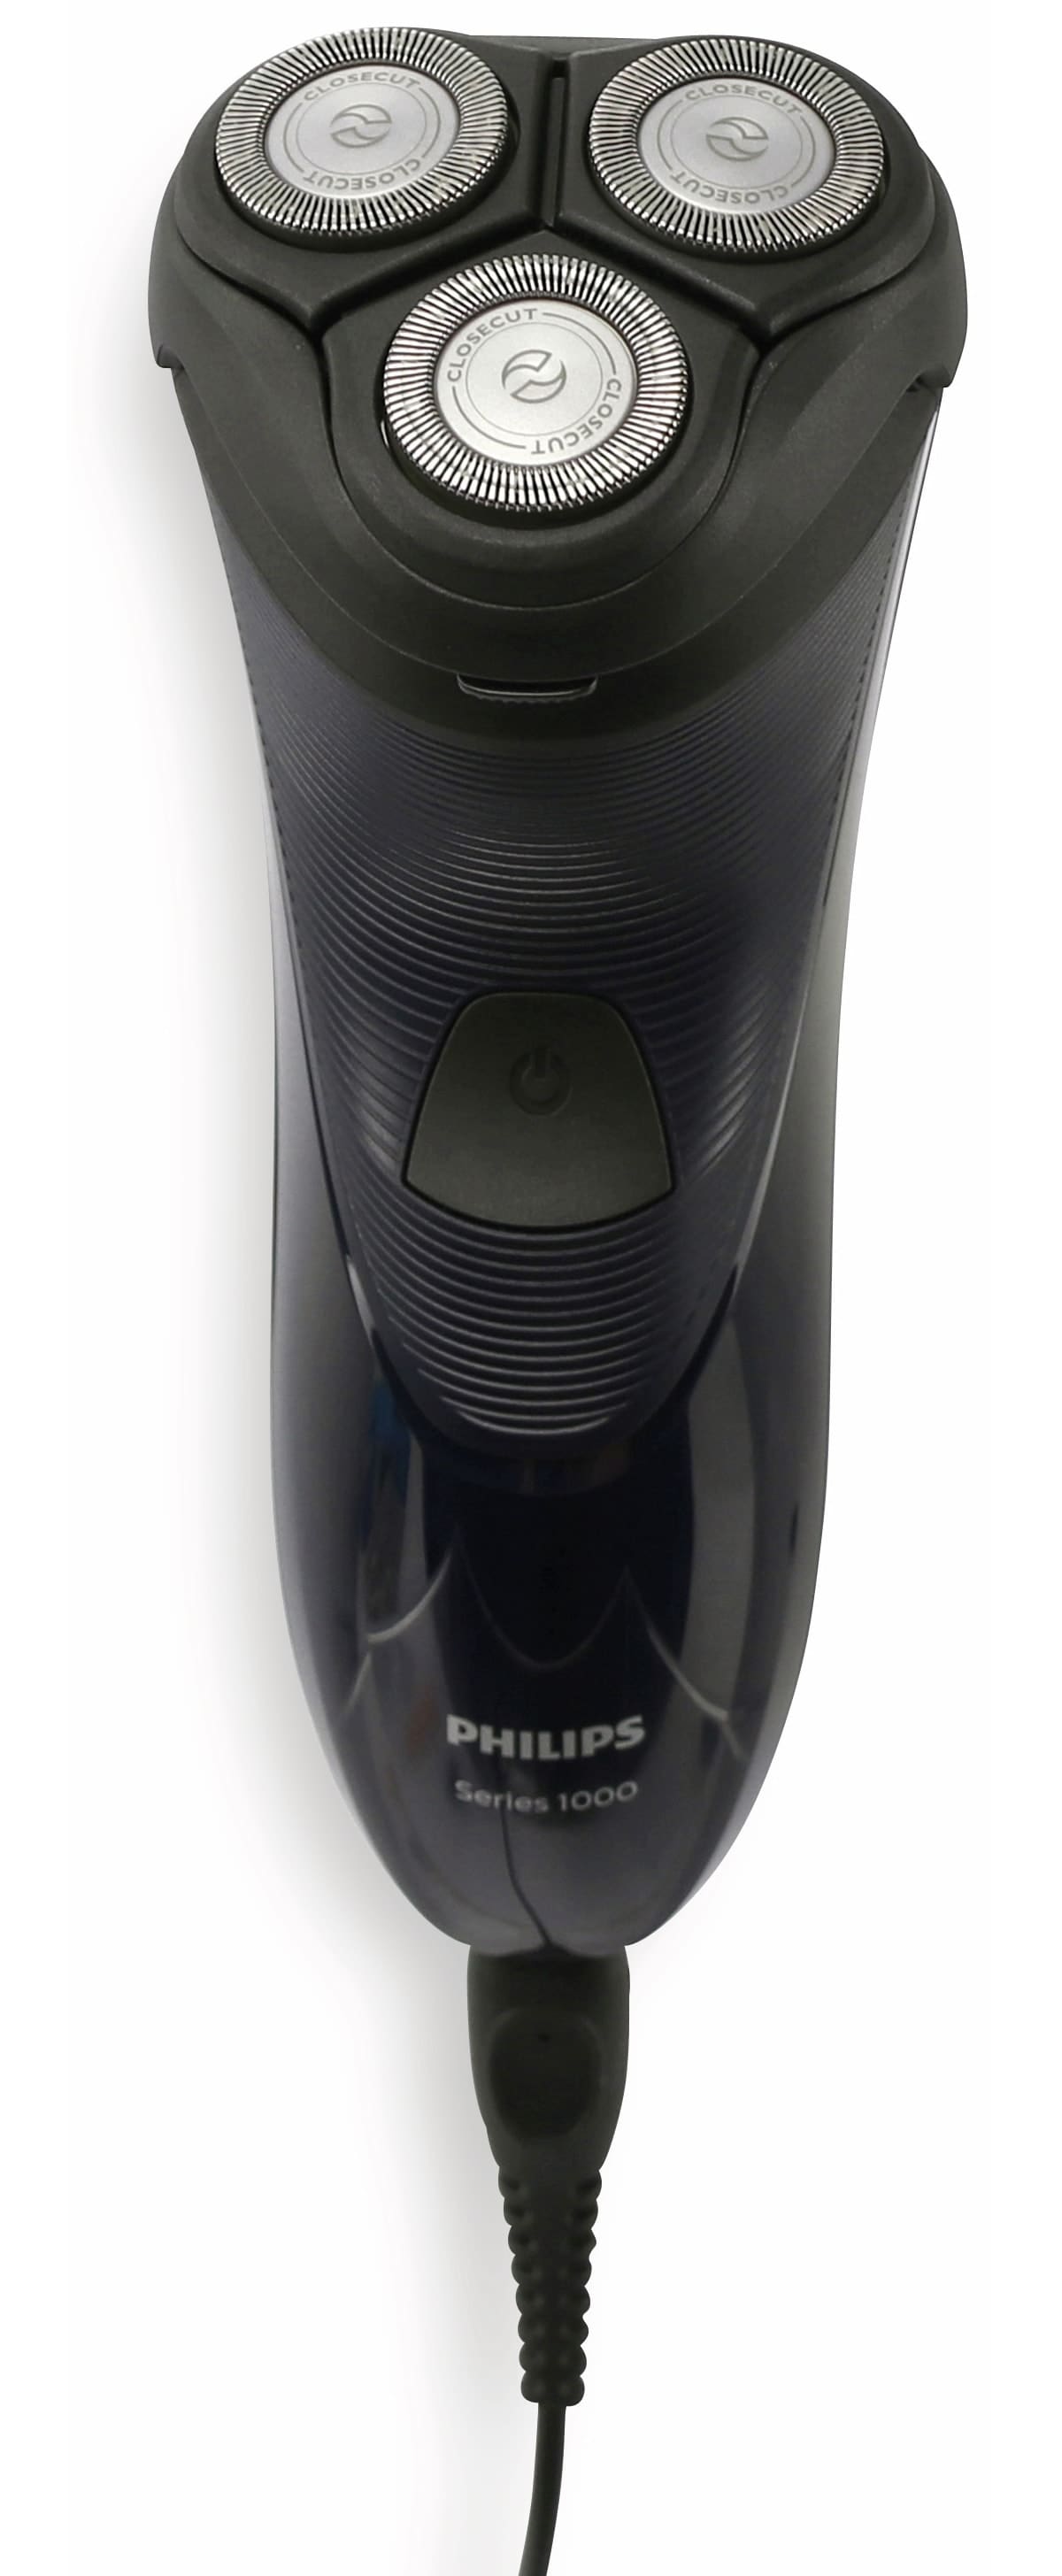 Philips Rasierer S1100/4, Easy Shave